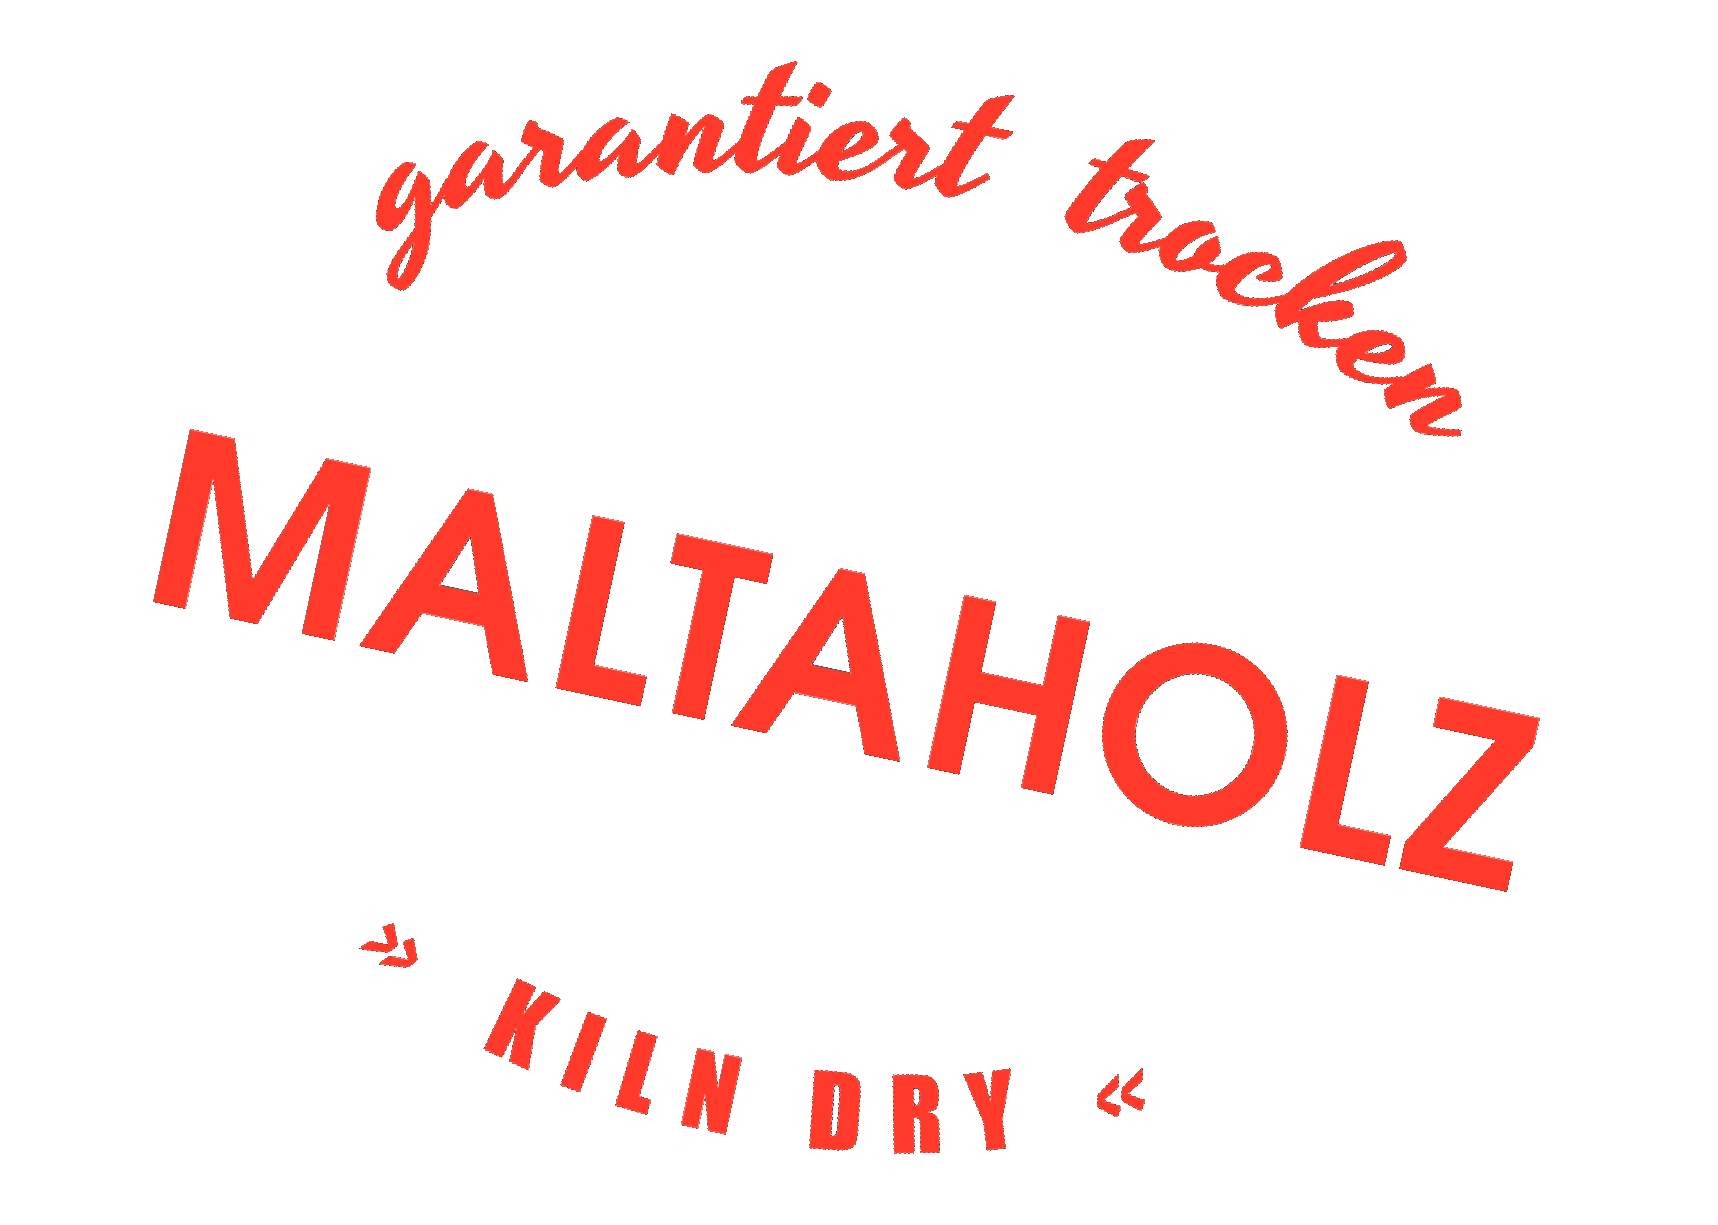 Maltaholz, Holzhandel, Logo, Kiln Dry